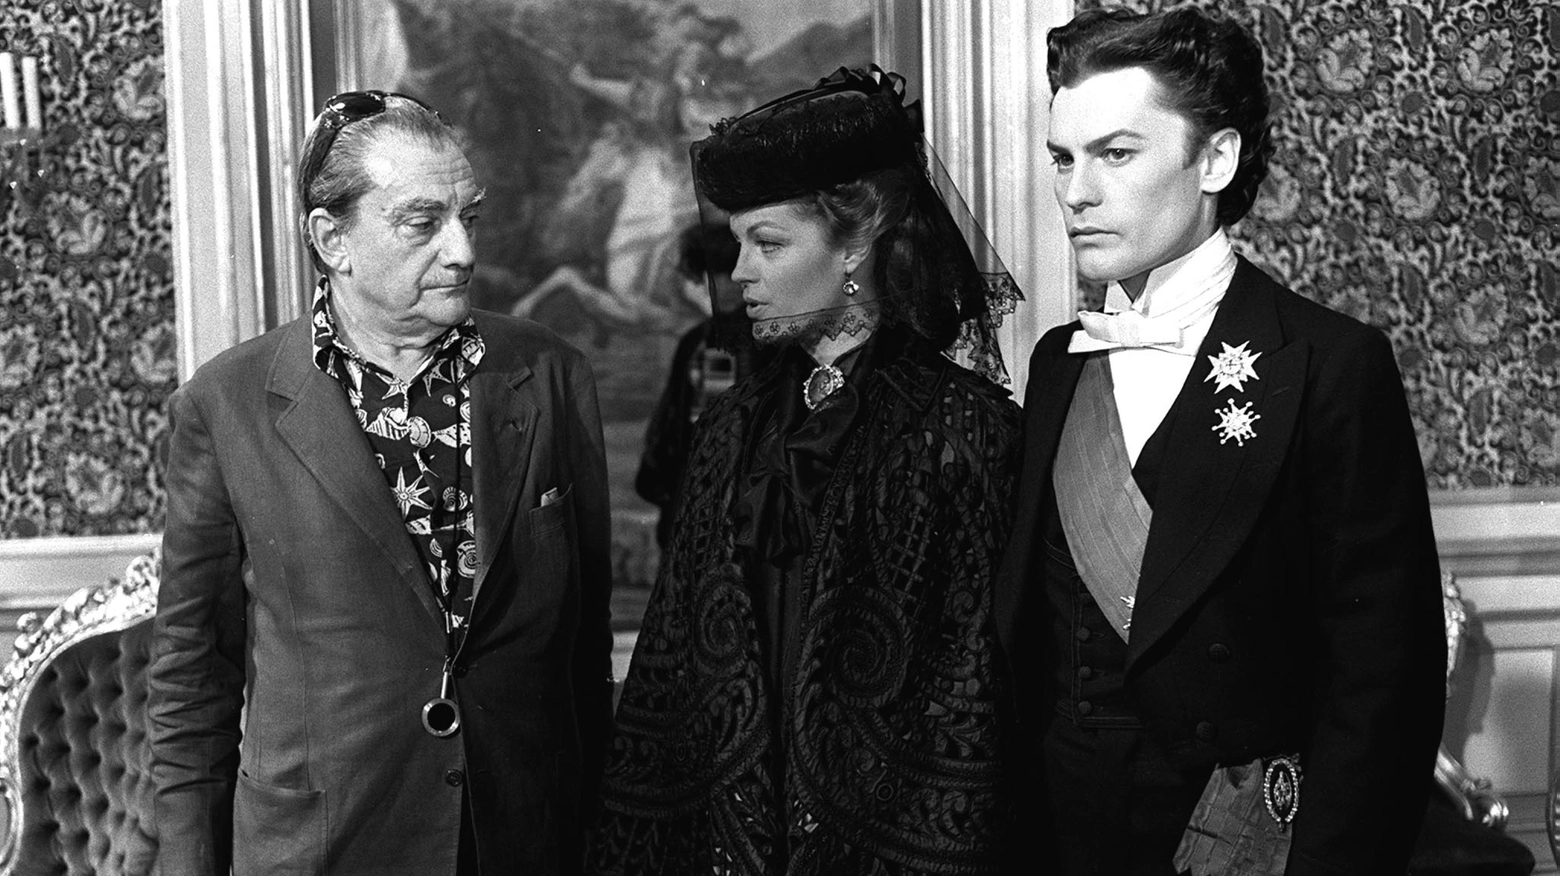 A destra Helmut Berger sul set del film 'Ludwig' di Luchino Visconti (a sinistra). Nel centro l'attrice Romy Schneider - foto Ansa